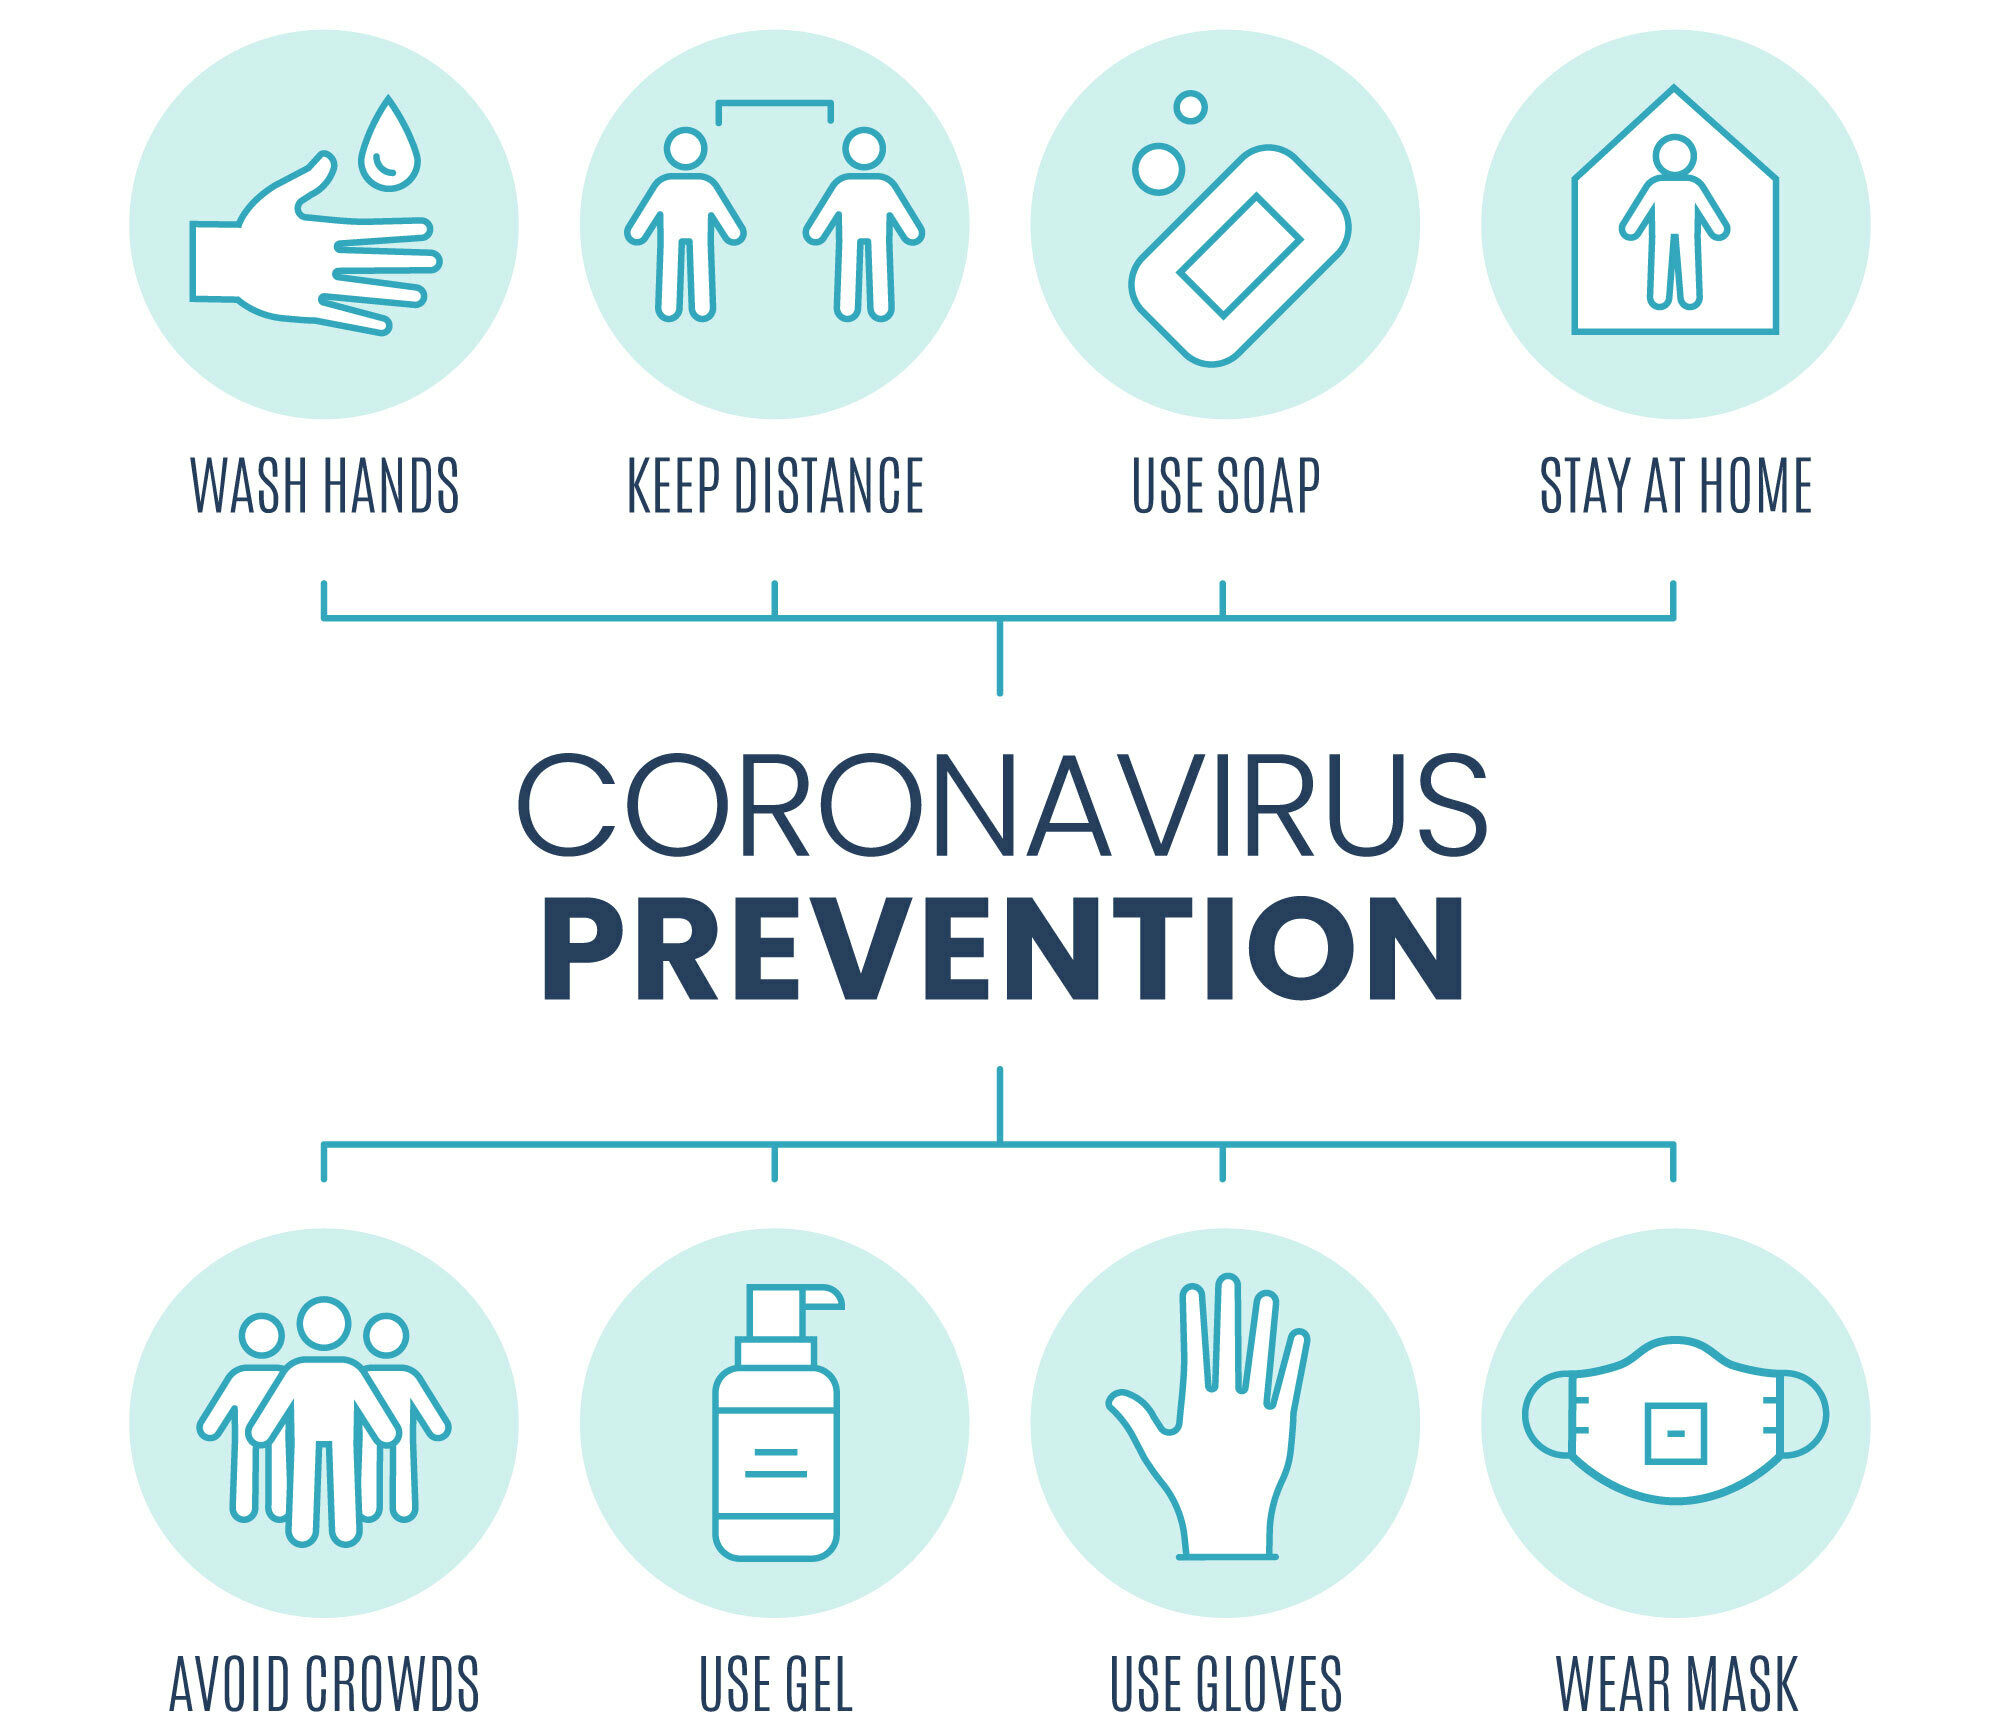 Coronavirous image